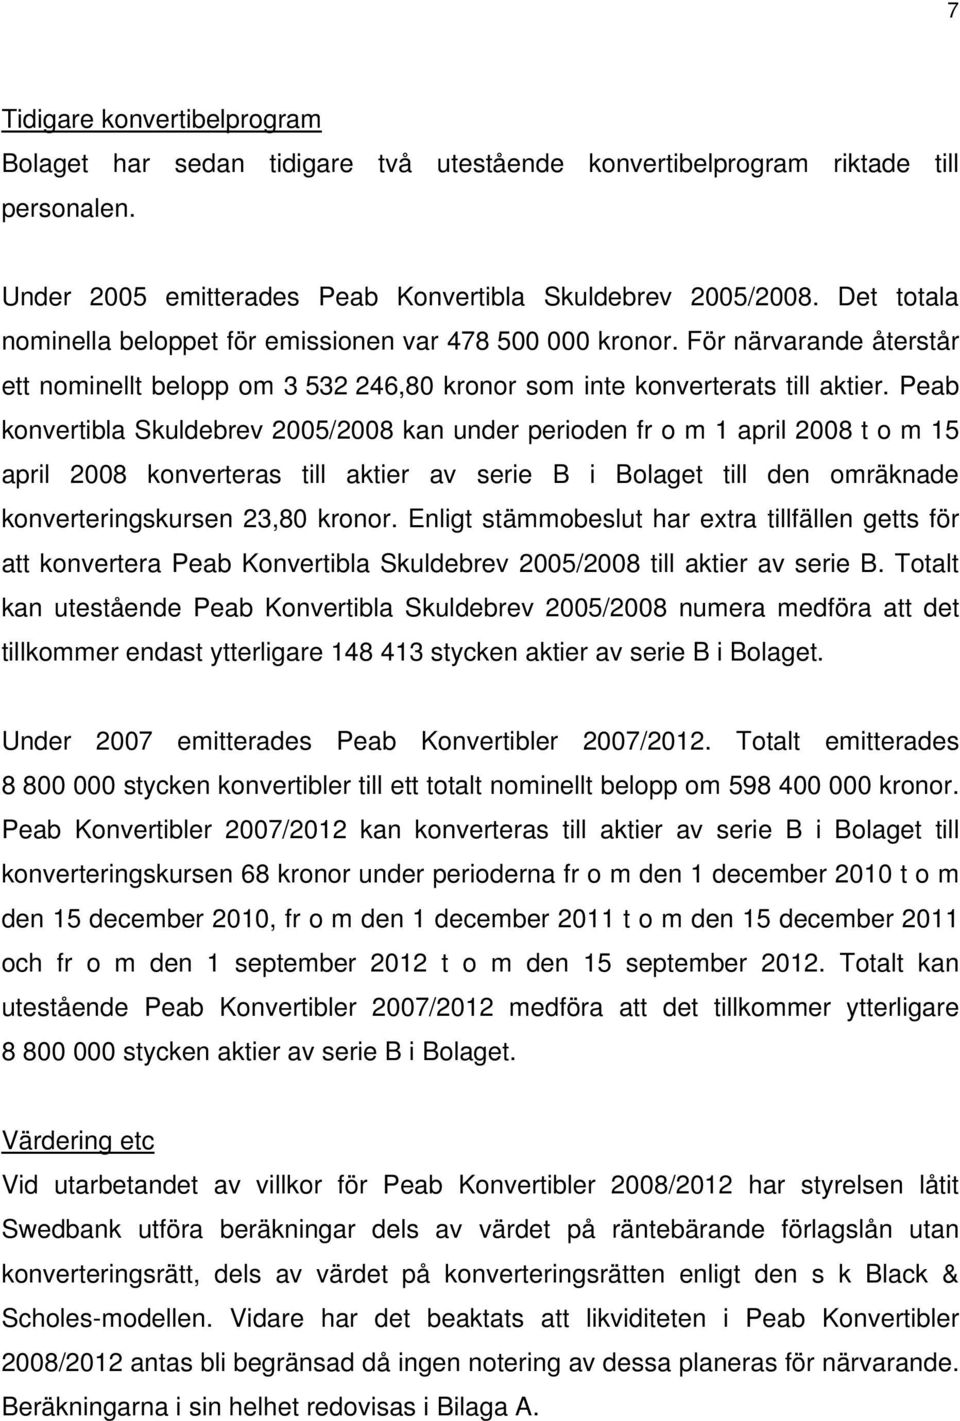 Peab konvertibla Skuldebrev 2005/2008 kan under perioden fr o m 1 april 2008 t o m 15 april 2008 konverteras till aktier av serie B i Bolaget till den omräknade konverteringskursen 23,80 kronor.